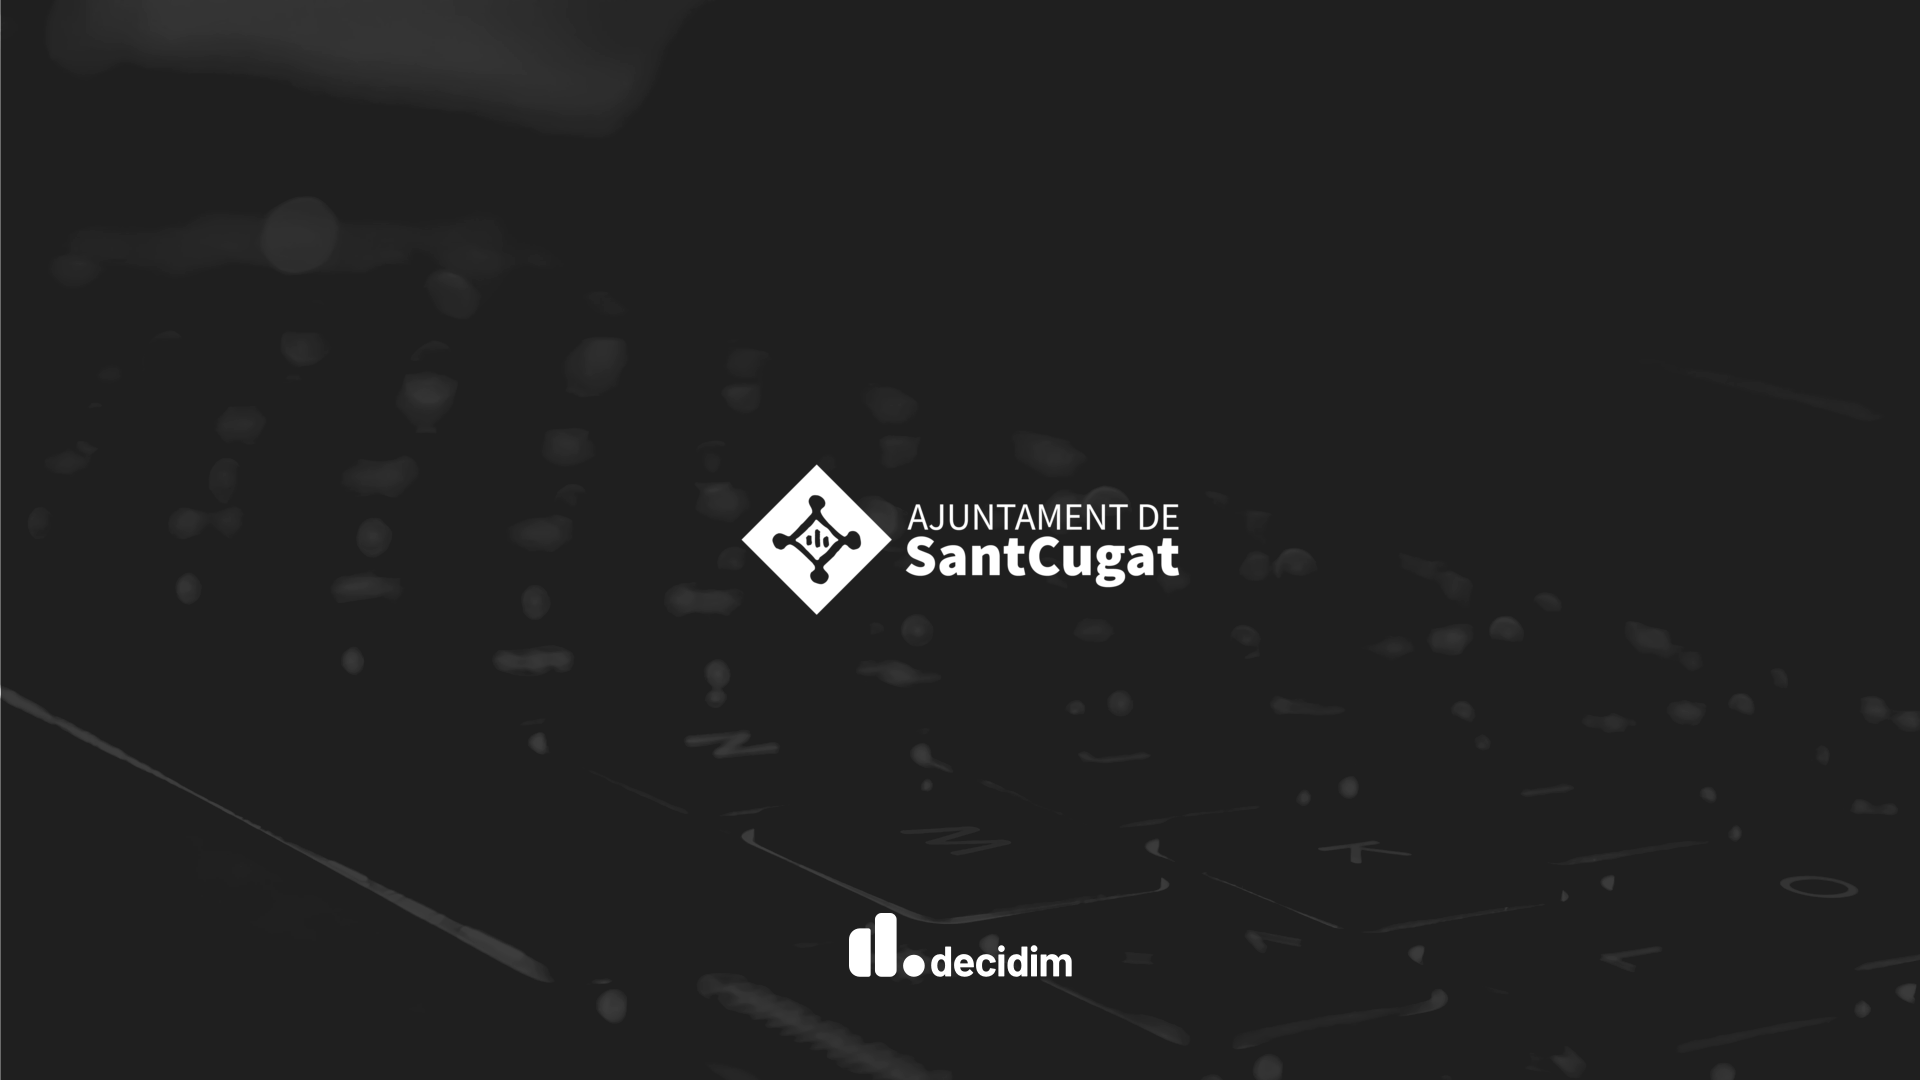 Decidim platform logo of Sant Cugat del Vallès